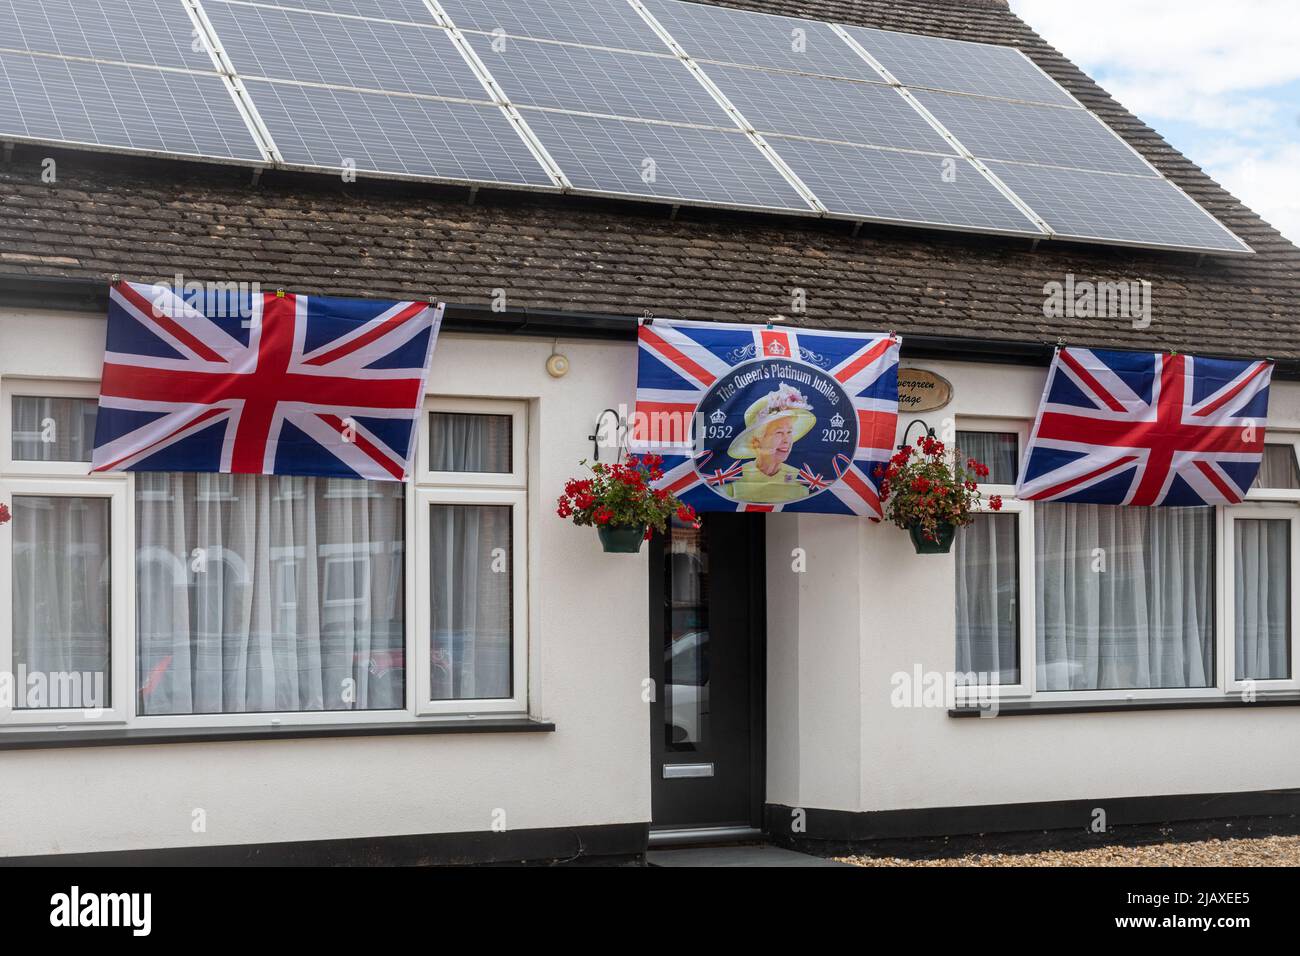 Le bandiere di decorazione del giubileo di platino su una proprietà della casa del bungalow per celebrare la regina Elisabetta II 70 anni sul trono, giugno 2022 Foto Stock